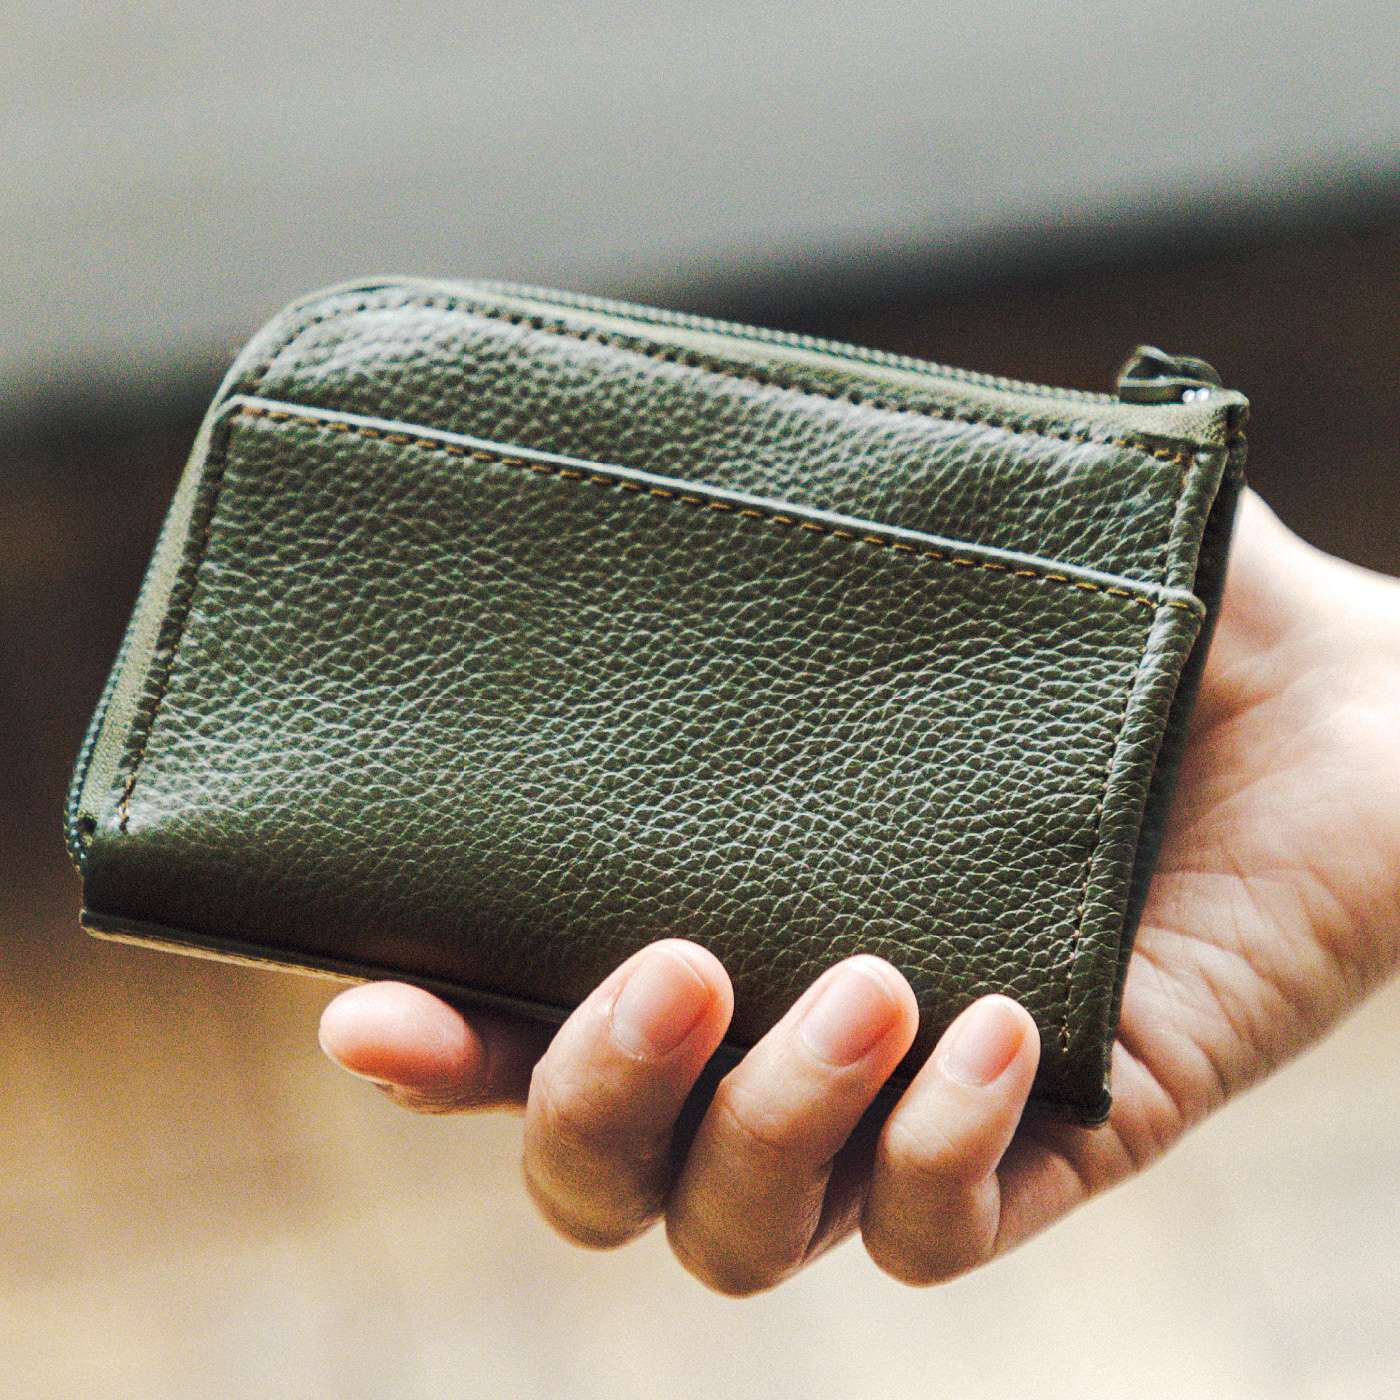 Real Stock|ちょうどいい大きさが手になじむ　本革ミニマム財布〈モスグリーン〉|手のひらに収まるサイズ感。